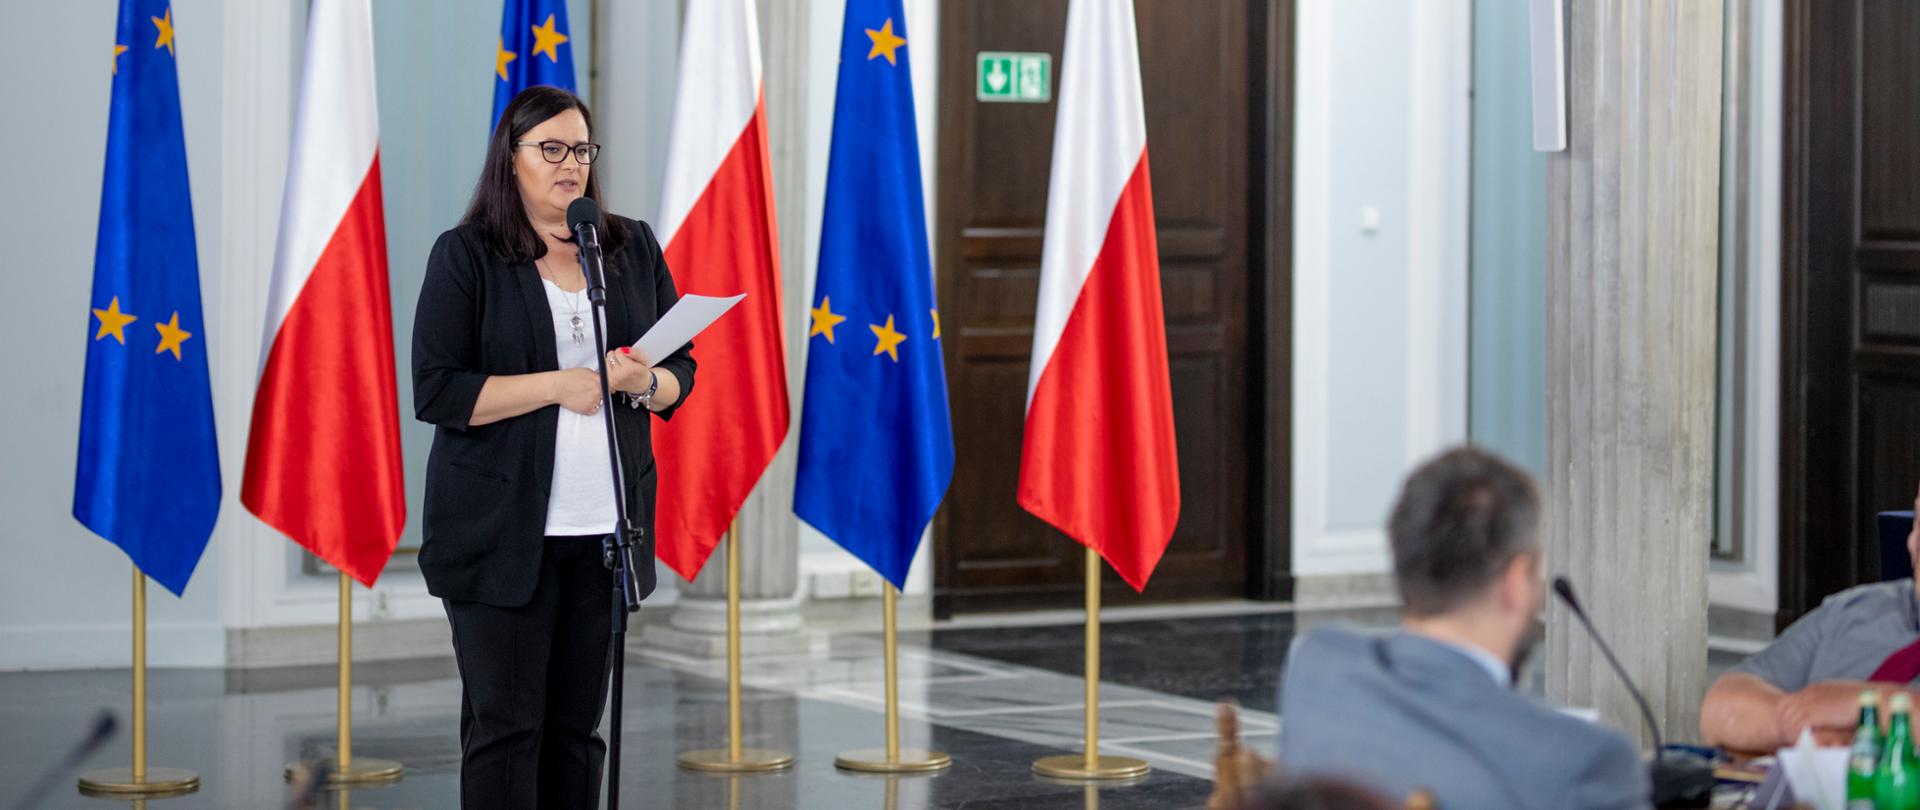 Na zdjęciu wiceminister Małgorzata Jarosińska-Jedynak przy mikrofonie podczas przemówienia, za nią sześć naprzemiennie ustawionych flag (unijne i polskie), po prawej w rogu część osób uczestniczących w konferencji przy stołach. 